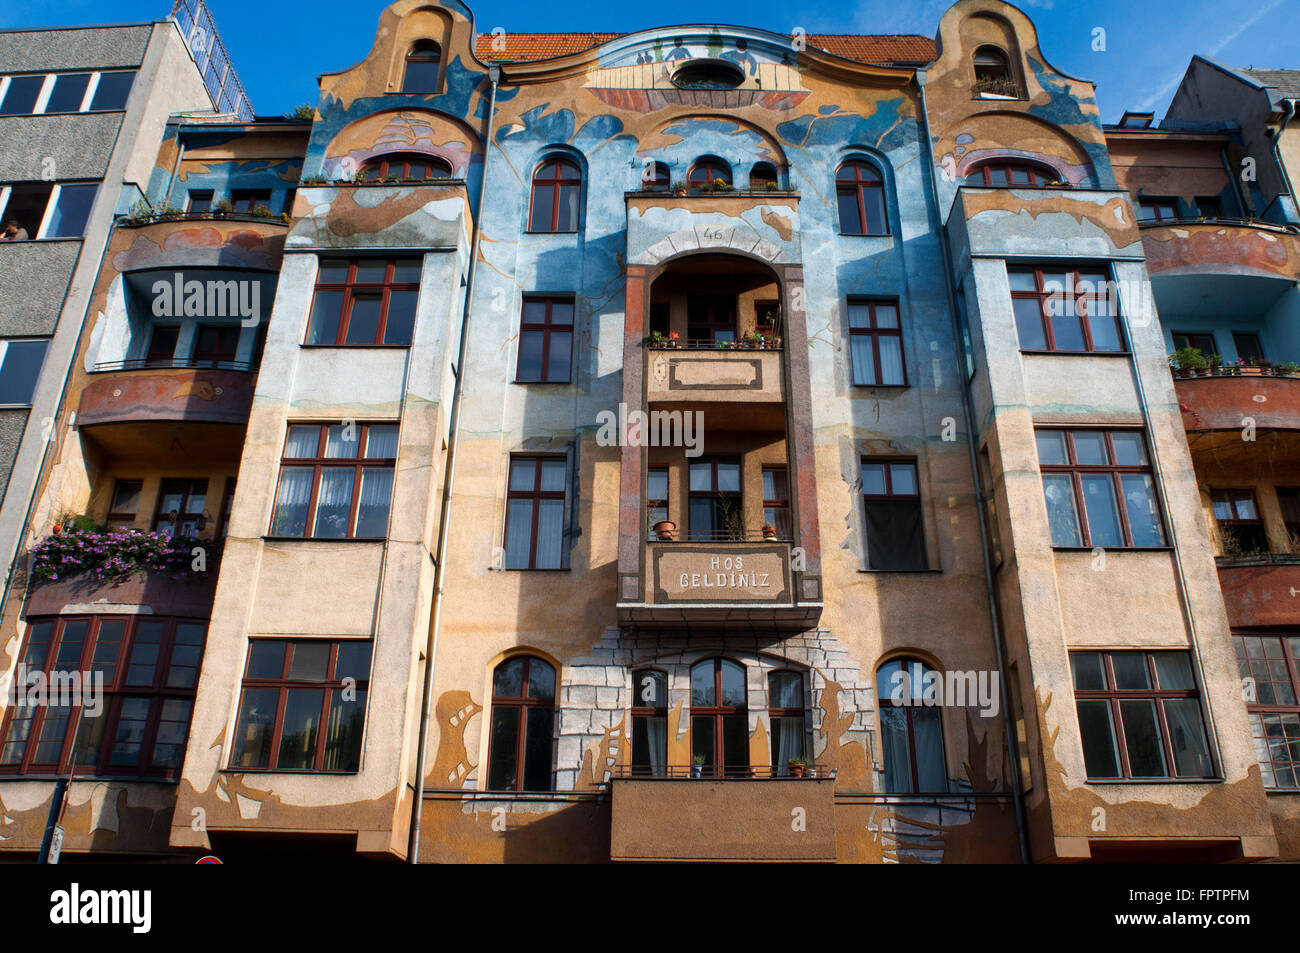 Hos Geldiniz Falckensteinstrasse 46, à Berlin, Allemagne, Europe. Vous trouverez cette belle maison peinte à l'extrémité ouest Banque D'Images